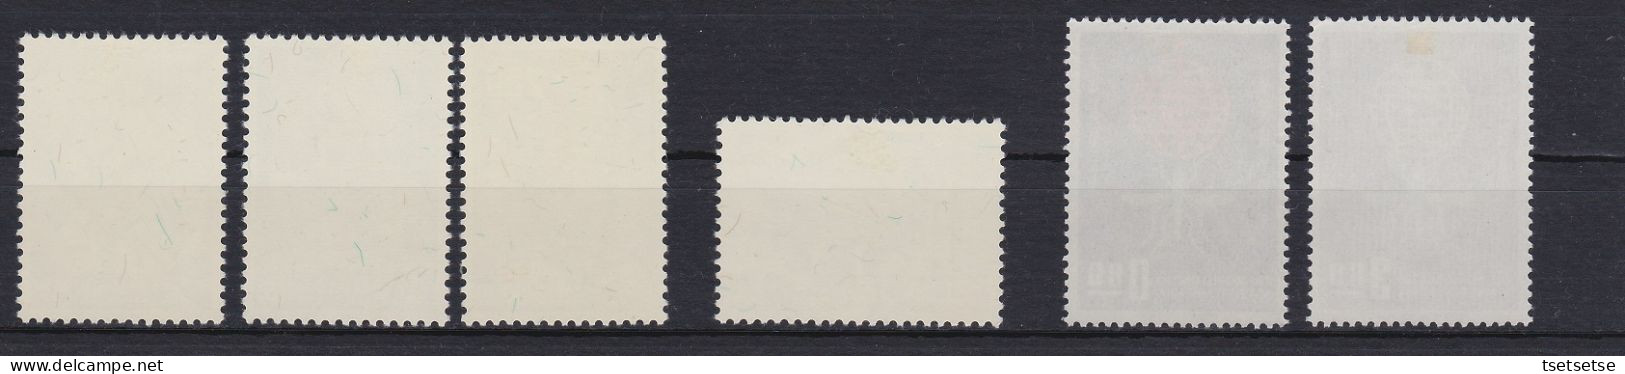 $95 CV! 1961/2 RO China Taiwan 2 Set Stamps, #1327-30,1342-43 Unused, VF OG + #C61 - Ongebruikt